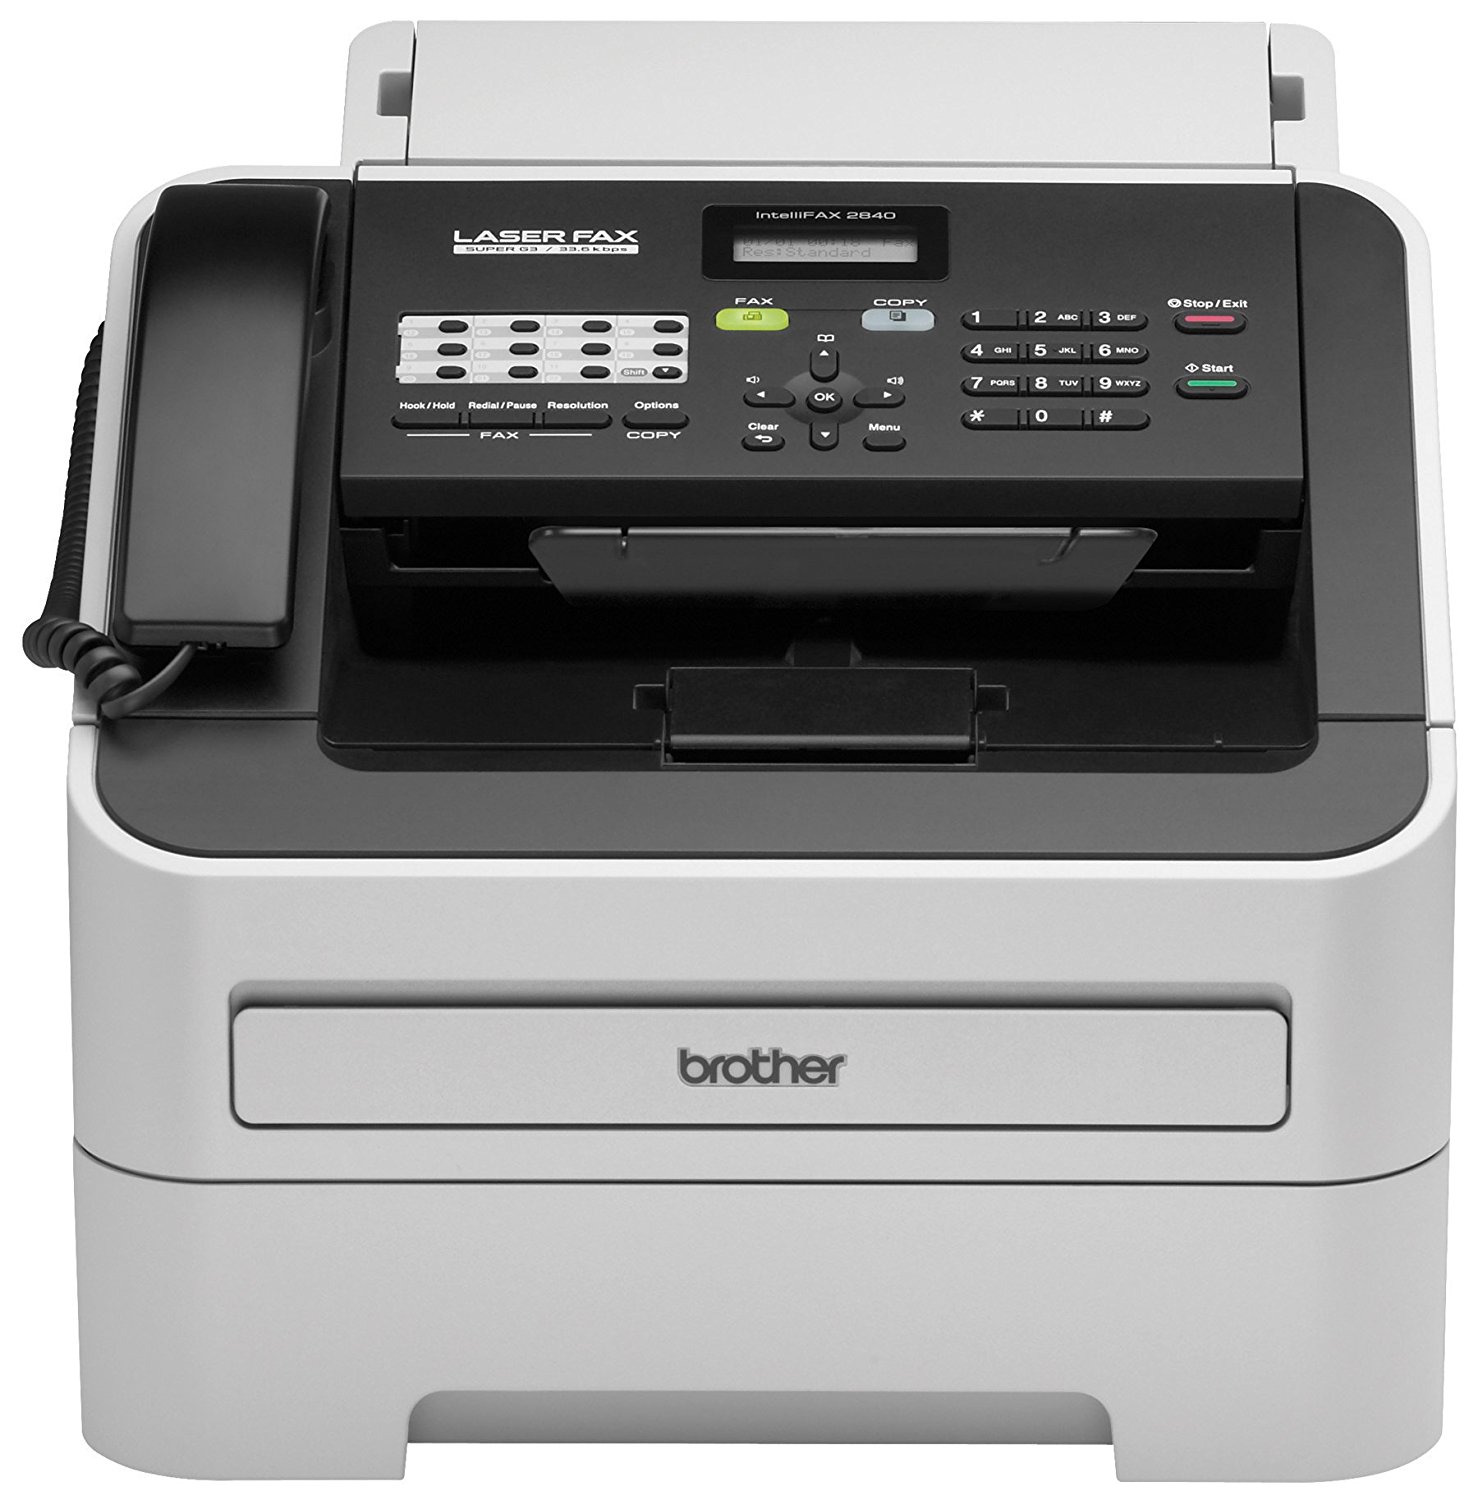  Brother Printer RFAX2840 स्कैनर और फैक्स के साथ वायरलेस मोनोक्रोम प्रिंटर (प्रमाणित नवीनी...